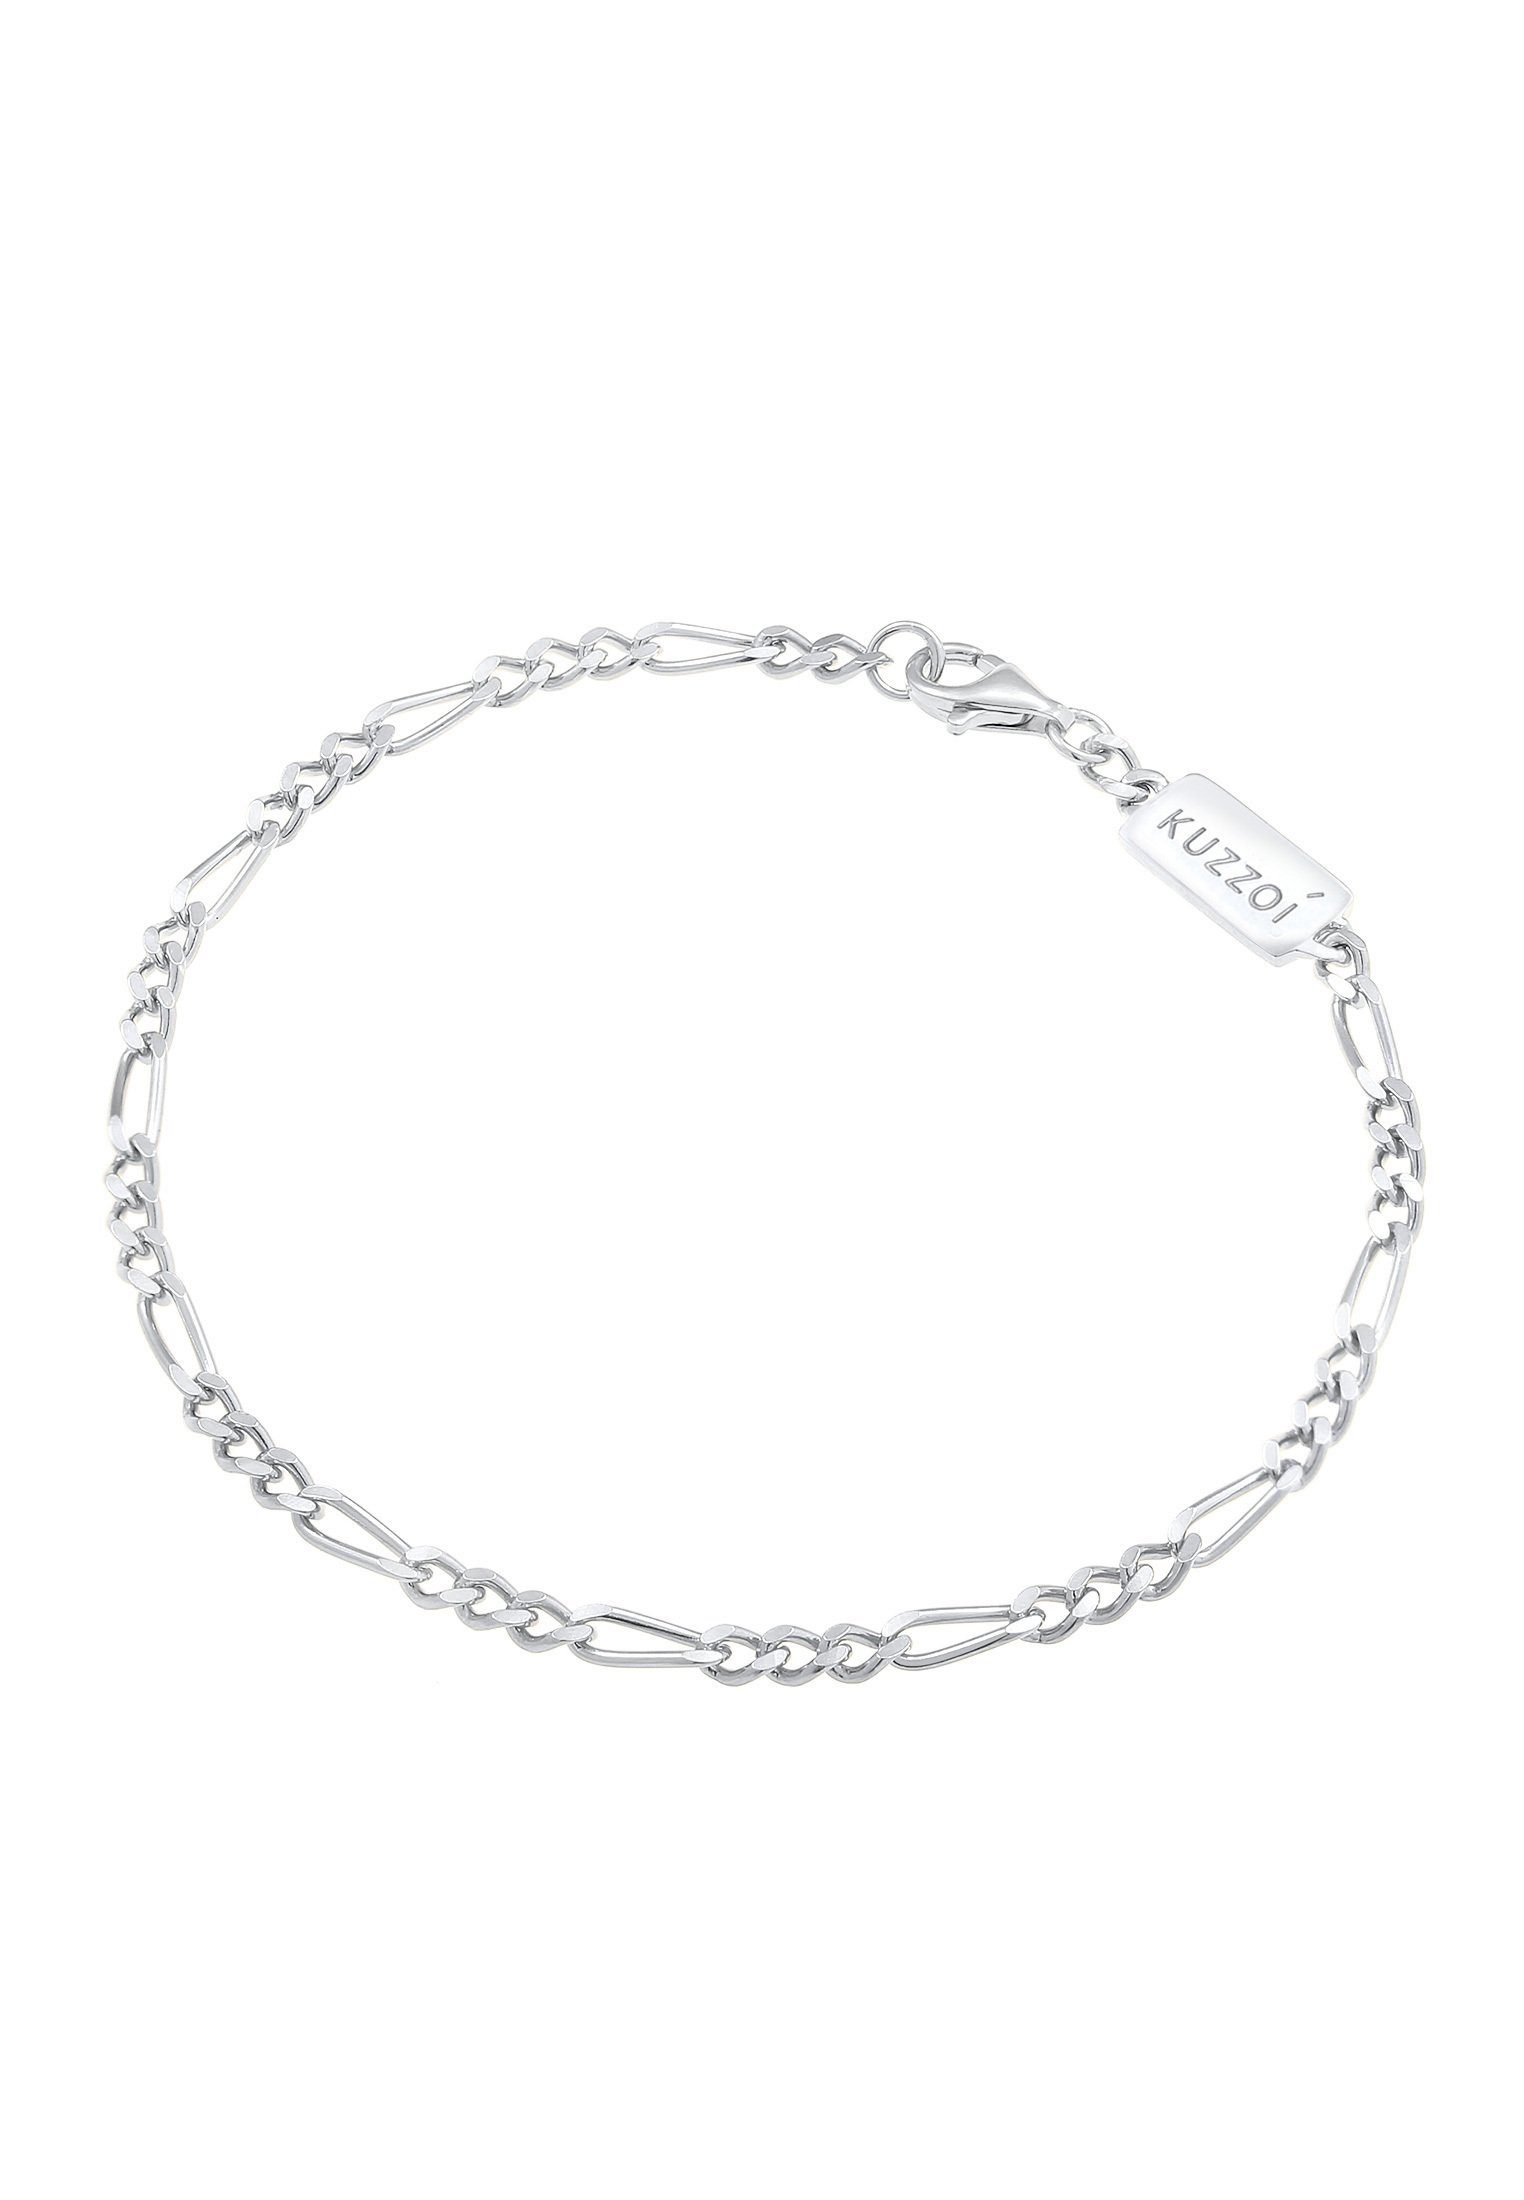 Kuzzoi Silberarmband Herren Figaro Massiv 925 Silber, Das ideale Geschenk  für den Mann oder Freund | Silberarmbänder